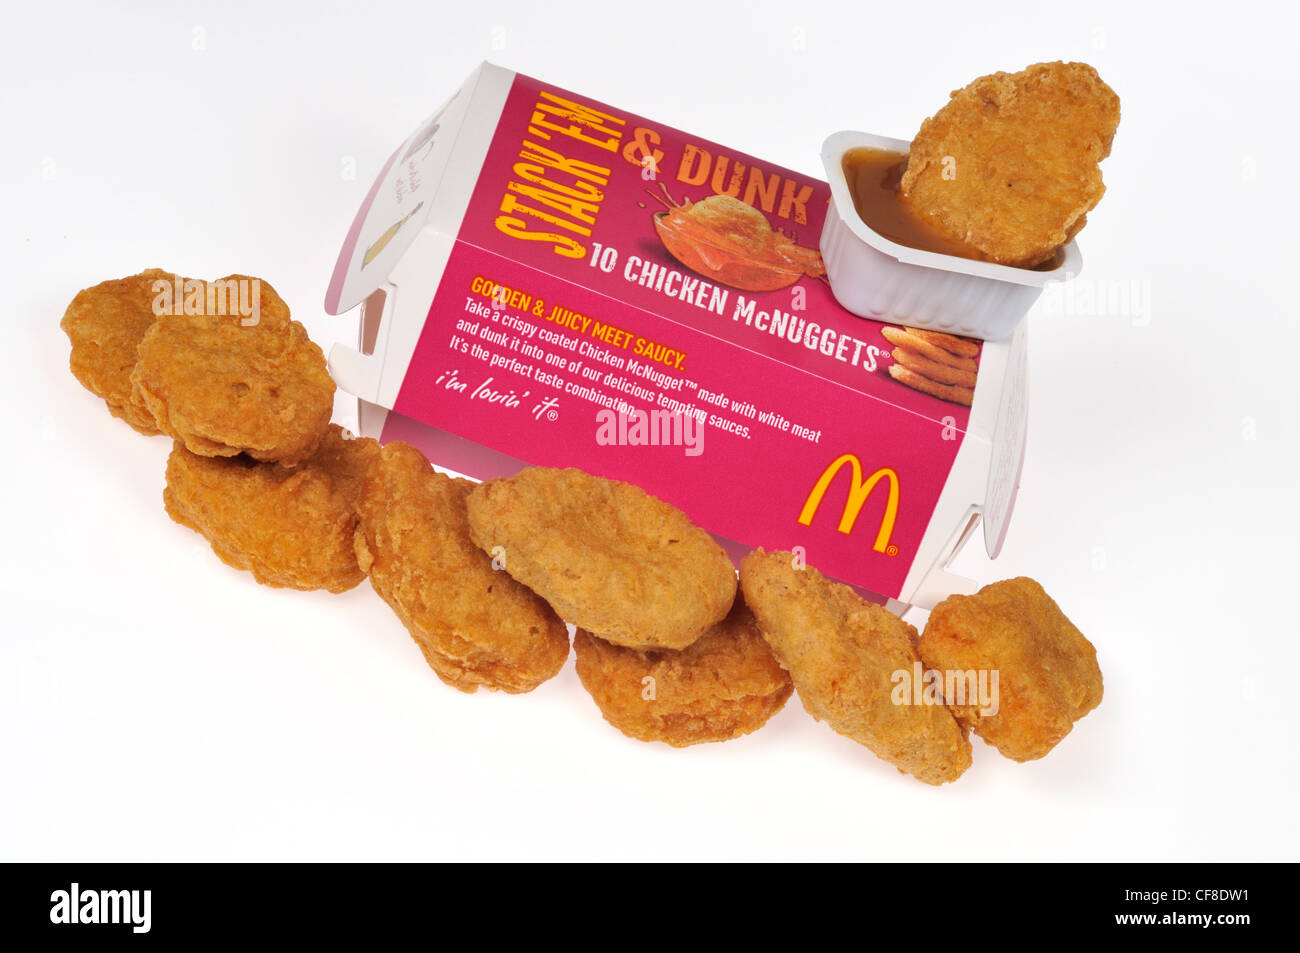 Container von McDonald's Chicken mcnuggets mit einem Nugget auf der Oberseite der Verpackung, in Soße auf weißem Hintergrund ausschneiden Stockfoto